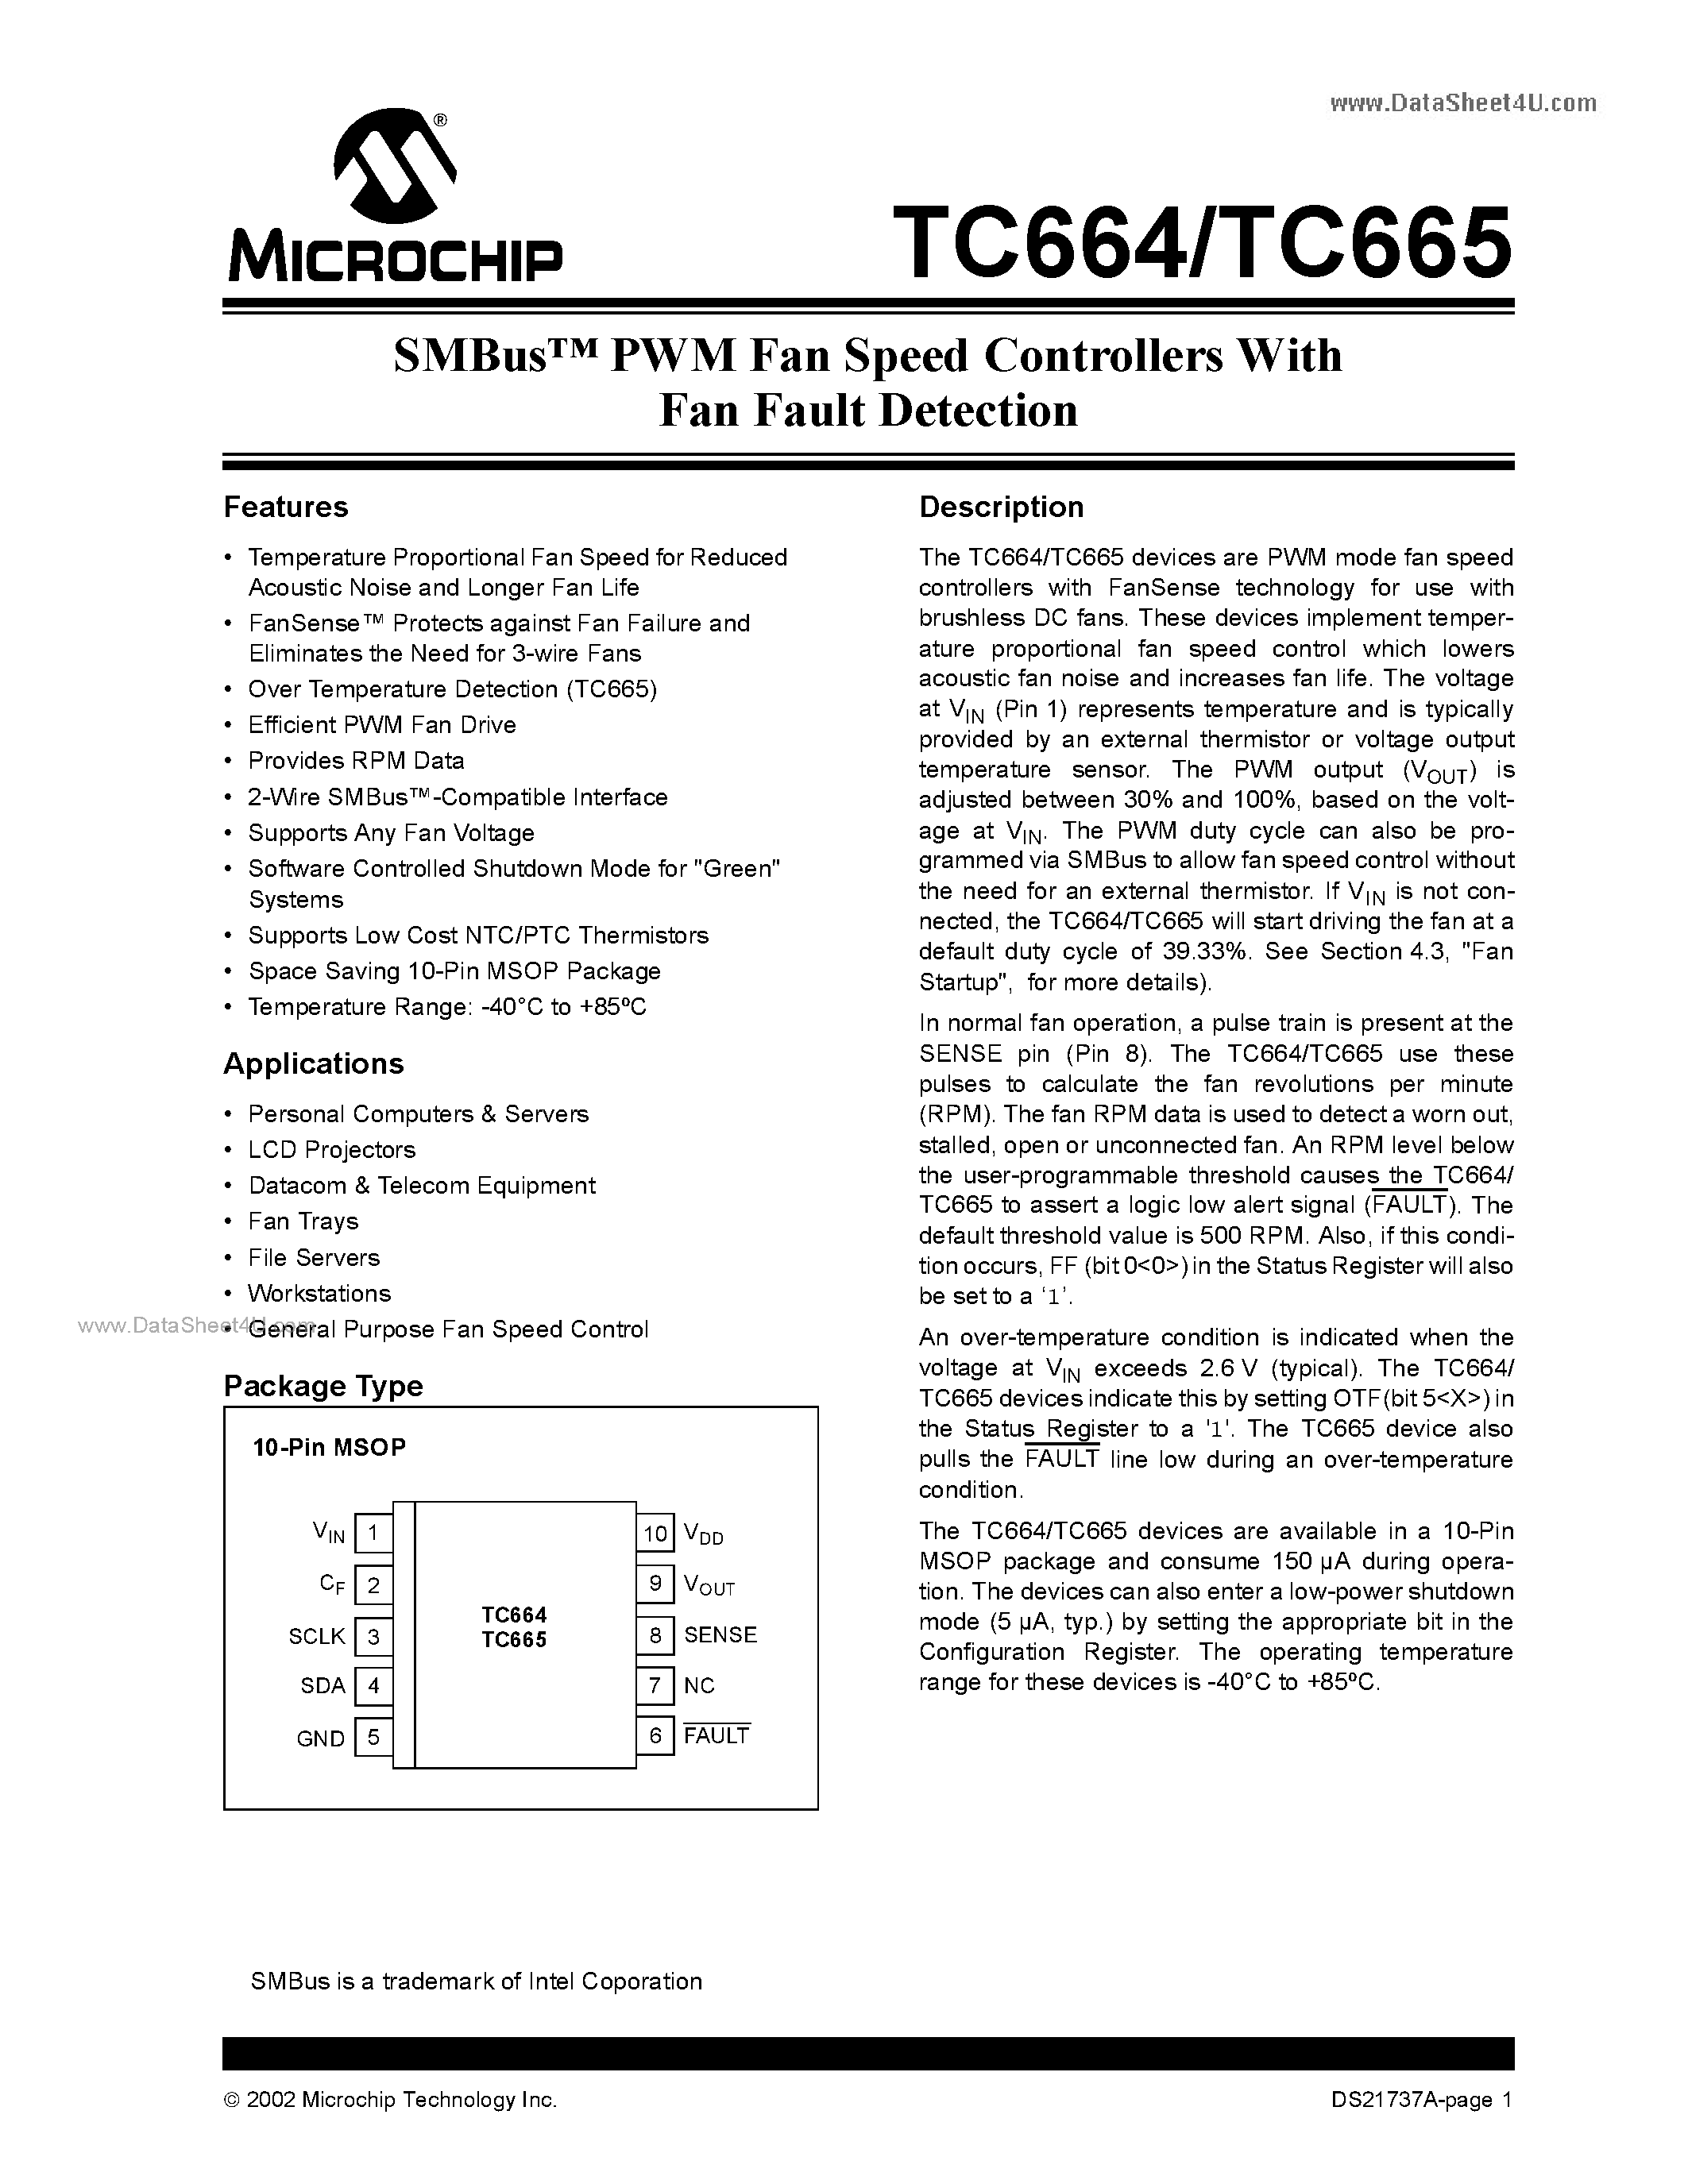 Даташит TC664 - (TC664 / TC665) PWM Fan Speed Controllers страница 1